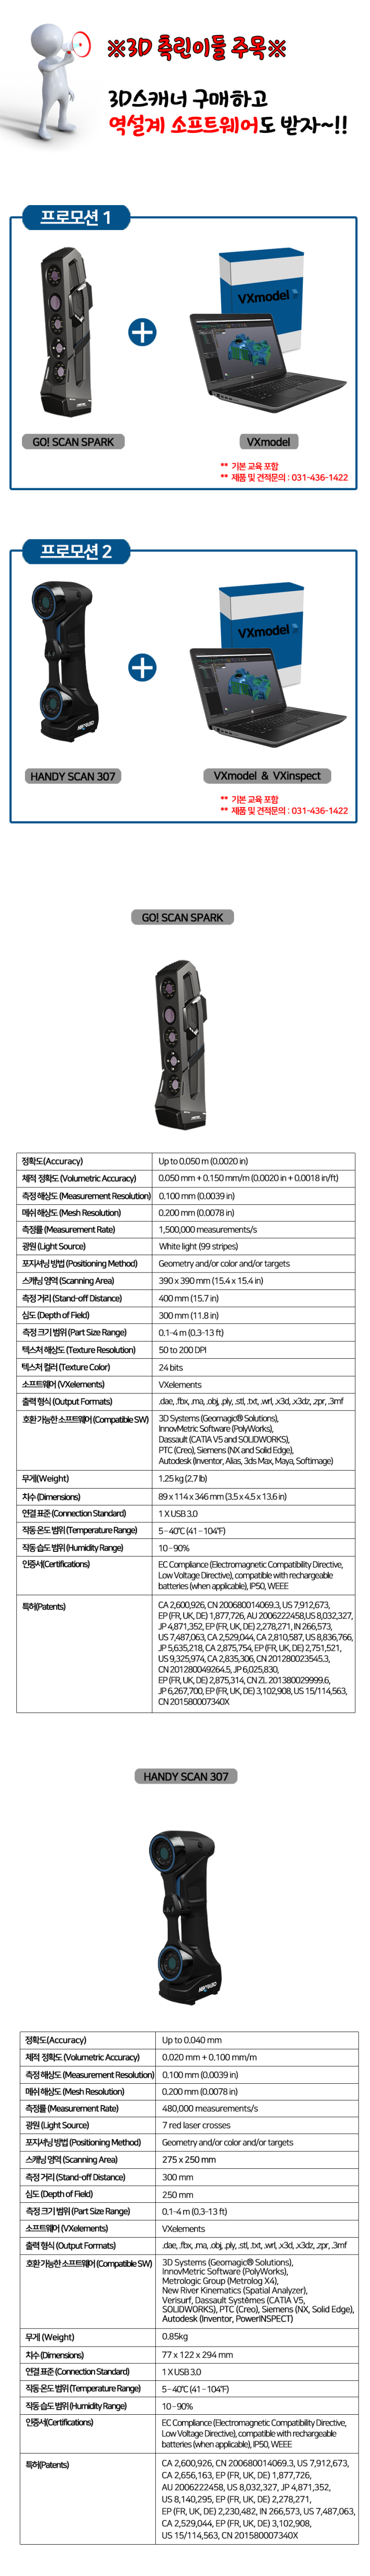 [프로모션] CREAFORM(크레아폼) 3D스캐너 구매시, 역설계 소프트웨어 증정